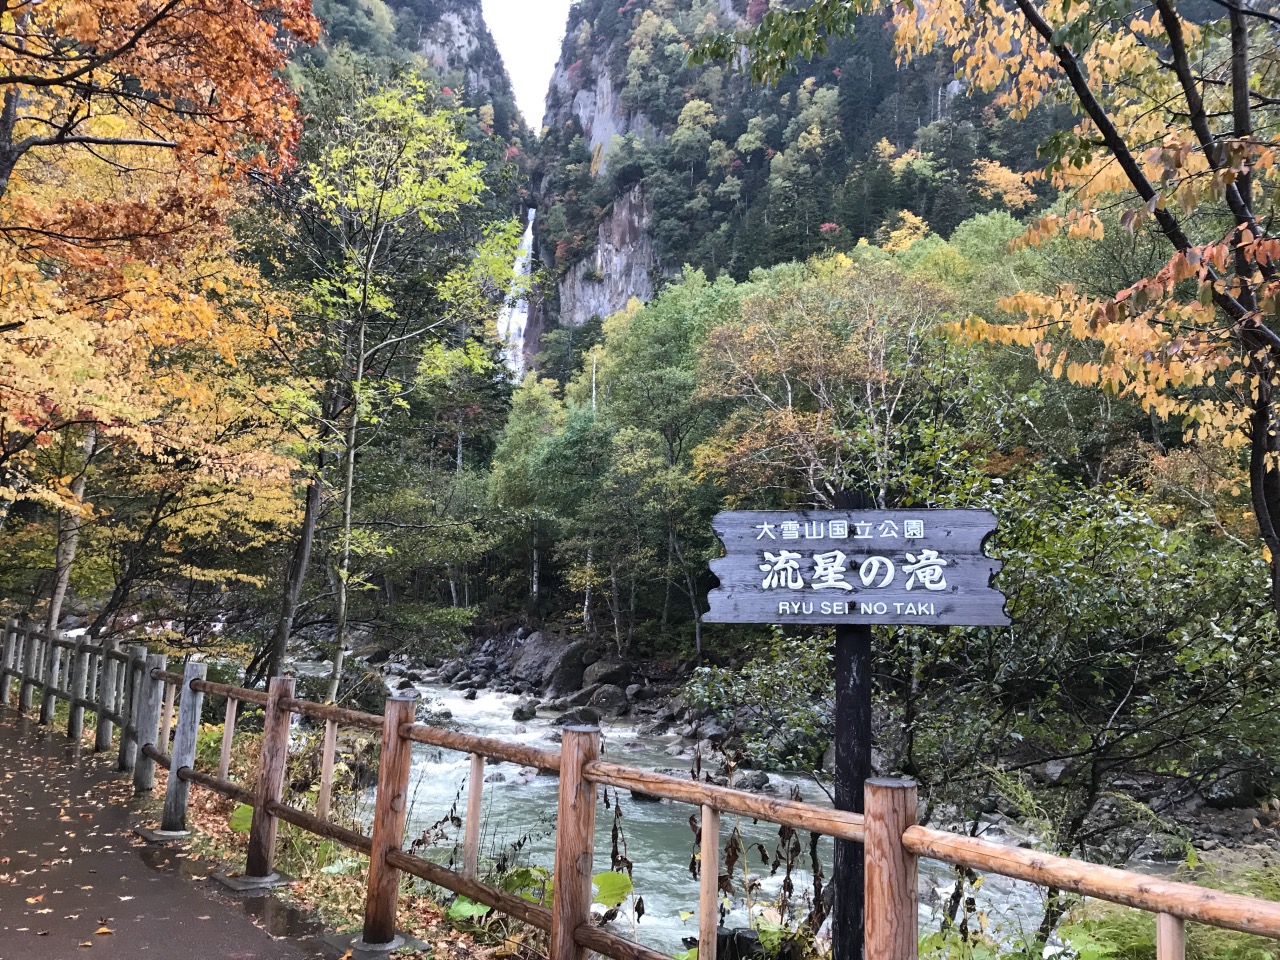 Daisetsuzan national park